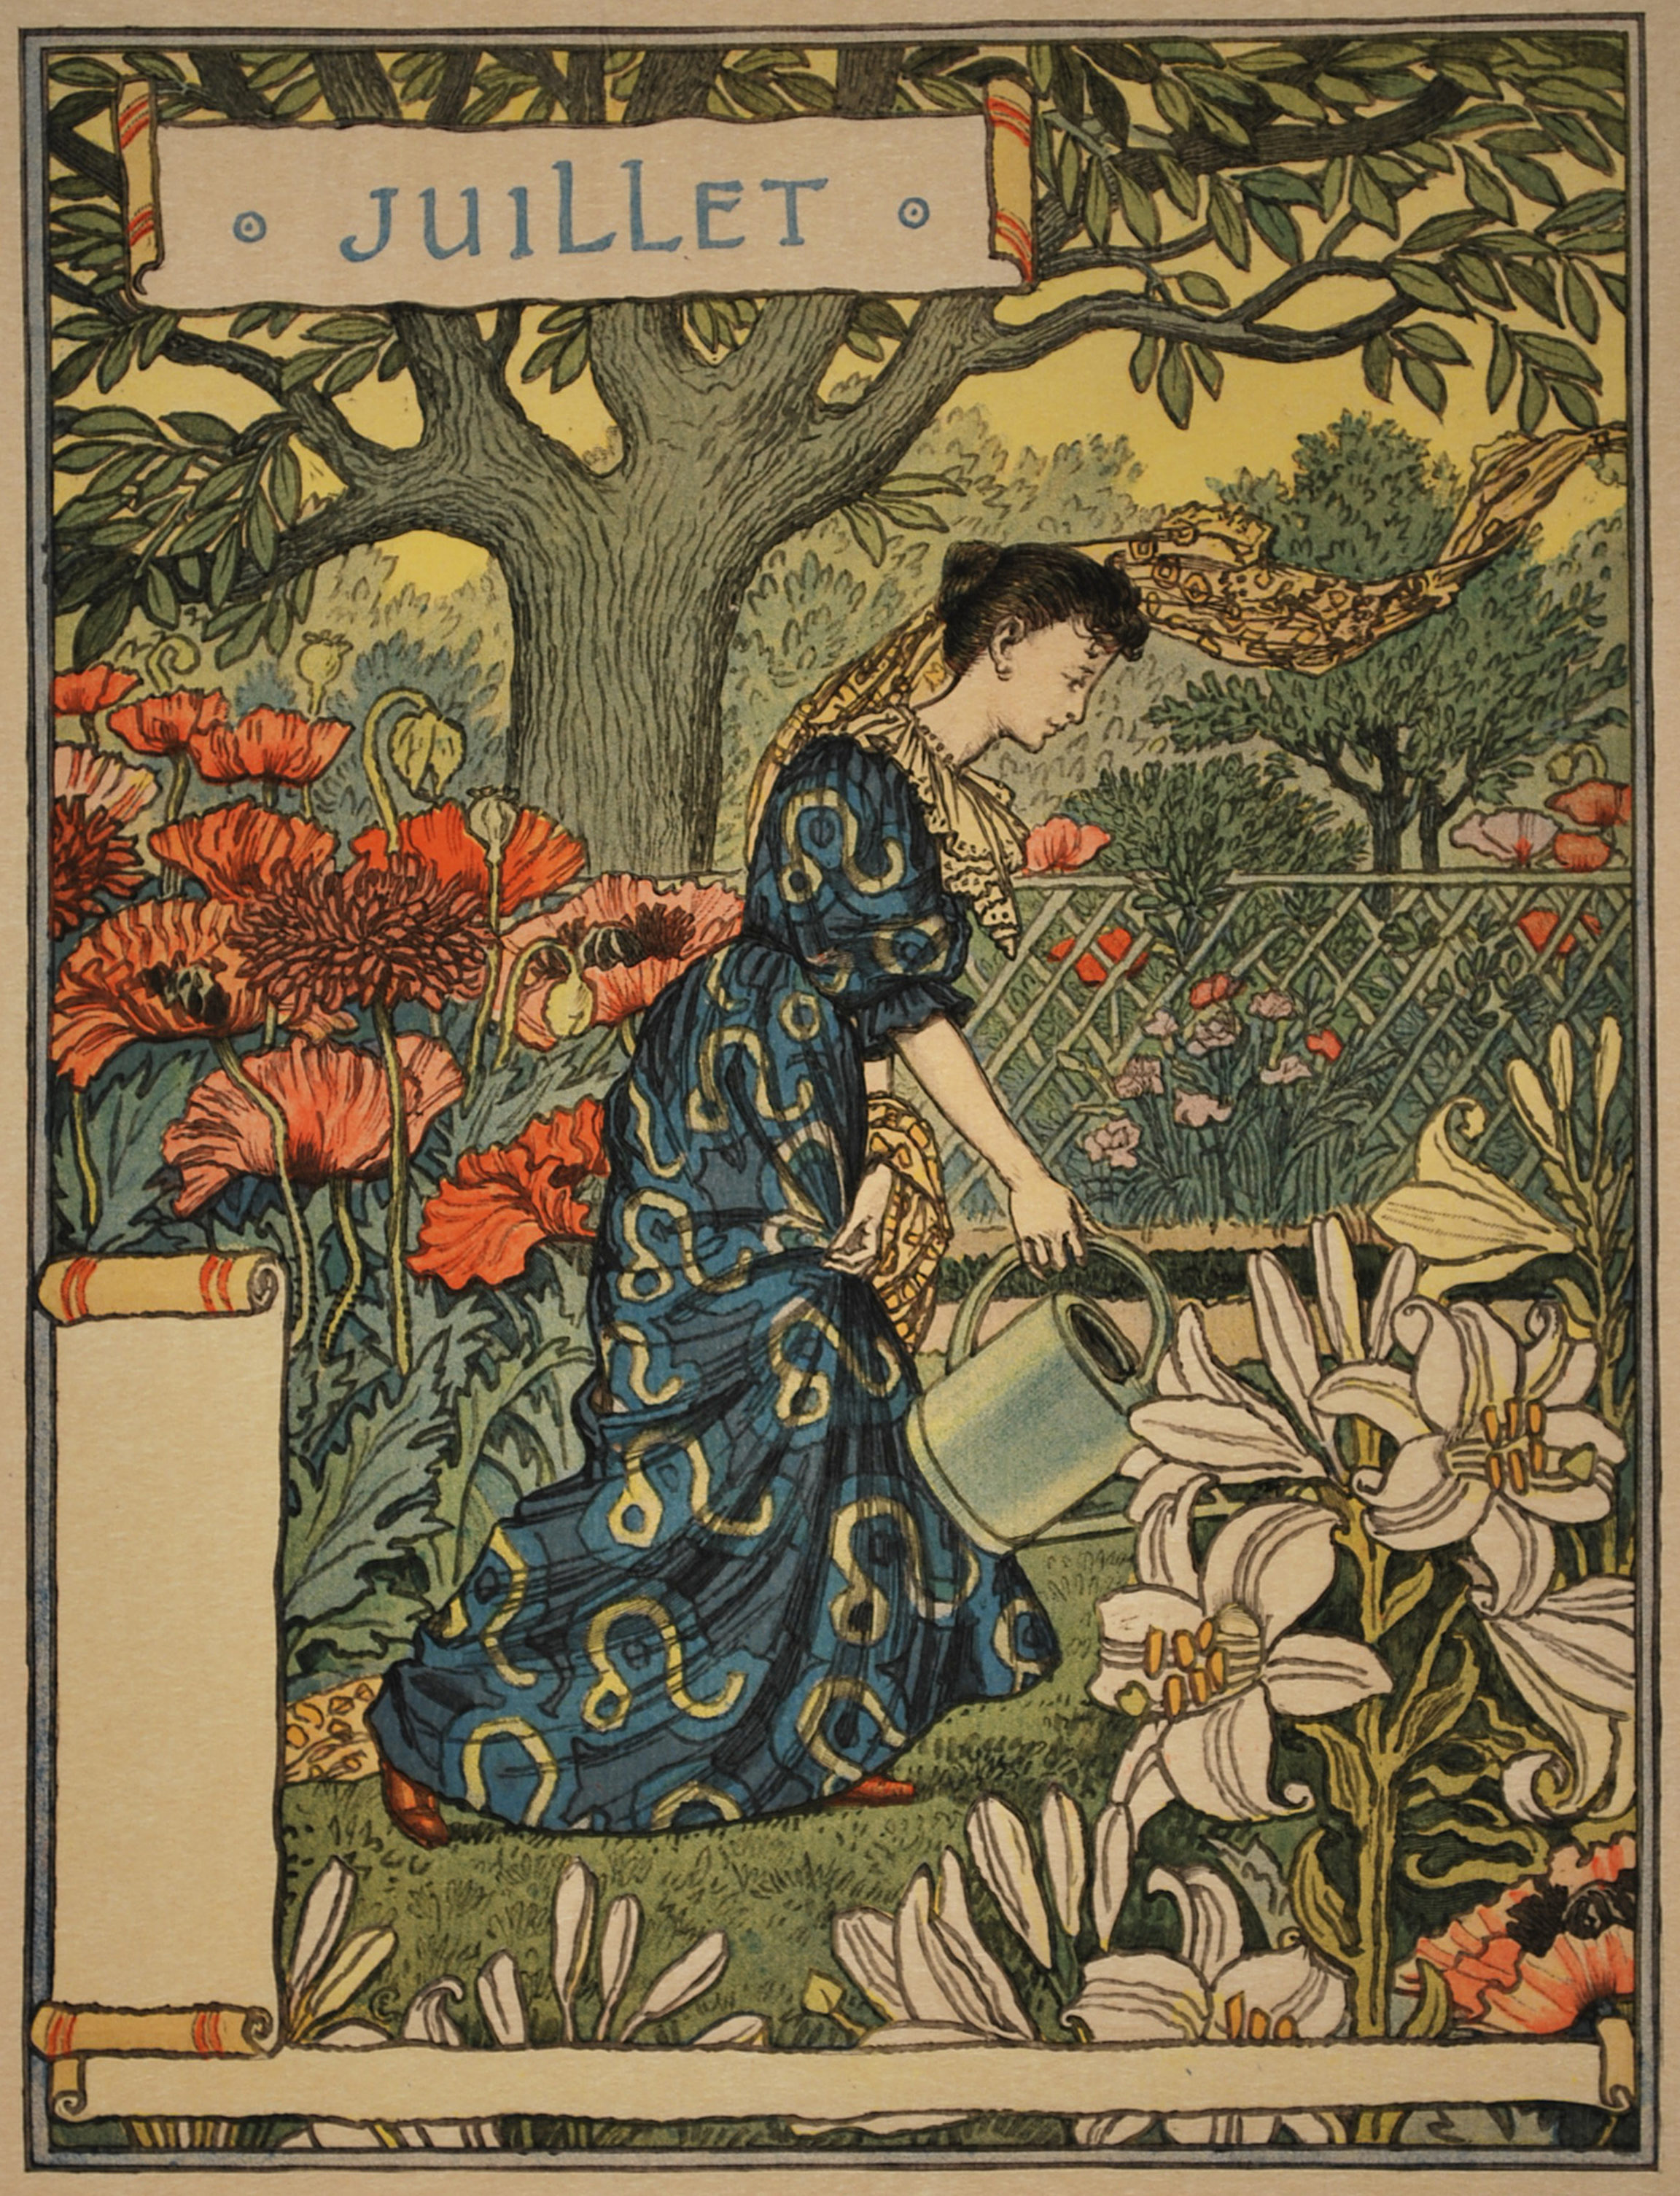 Eugène Grasset, Calendrier de La Belle Jardinière. Les Mois. Juillet (Calendar for La Belle Jardinière. The Months. July), 1896